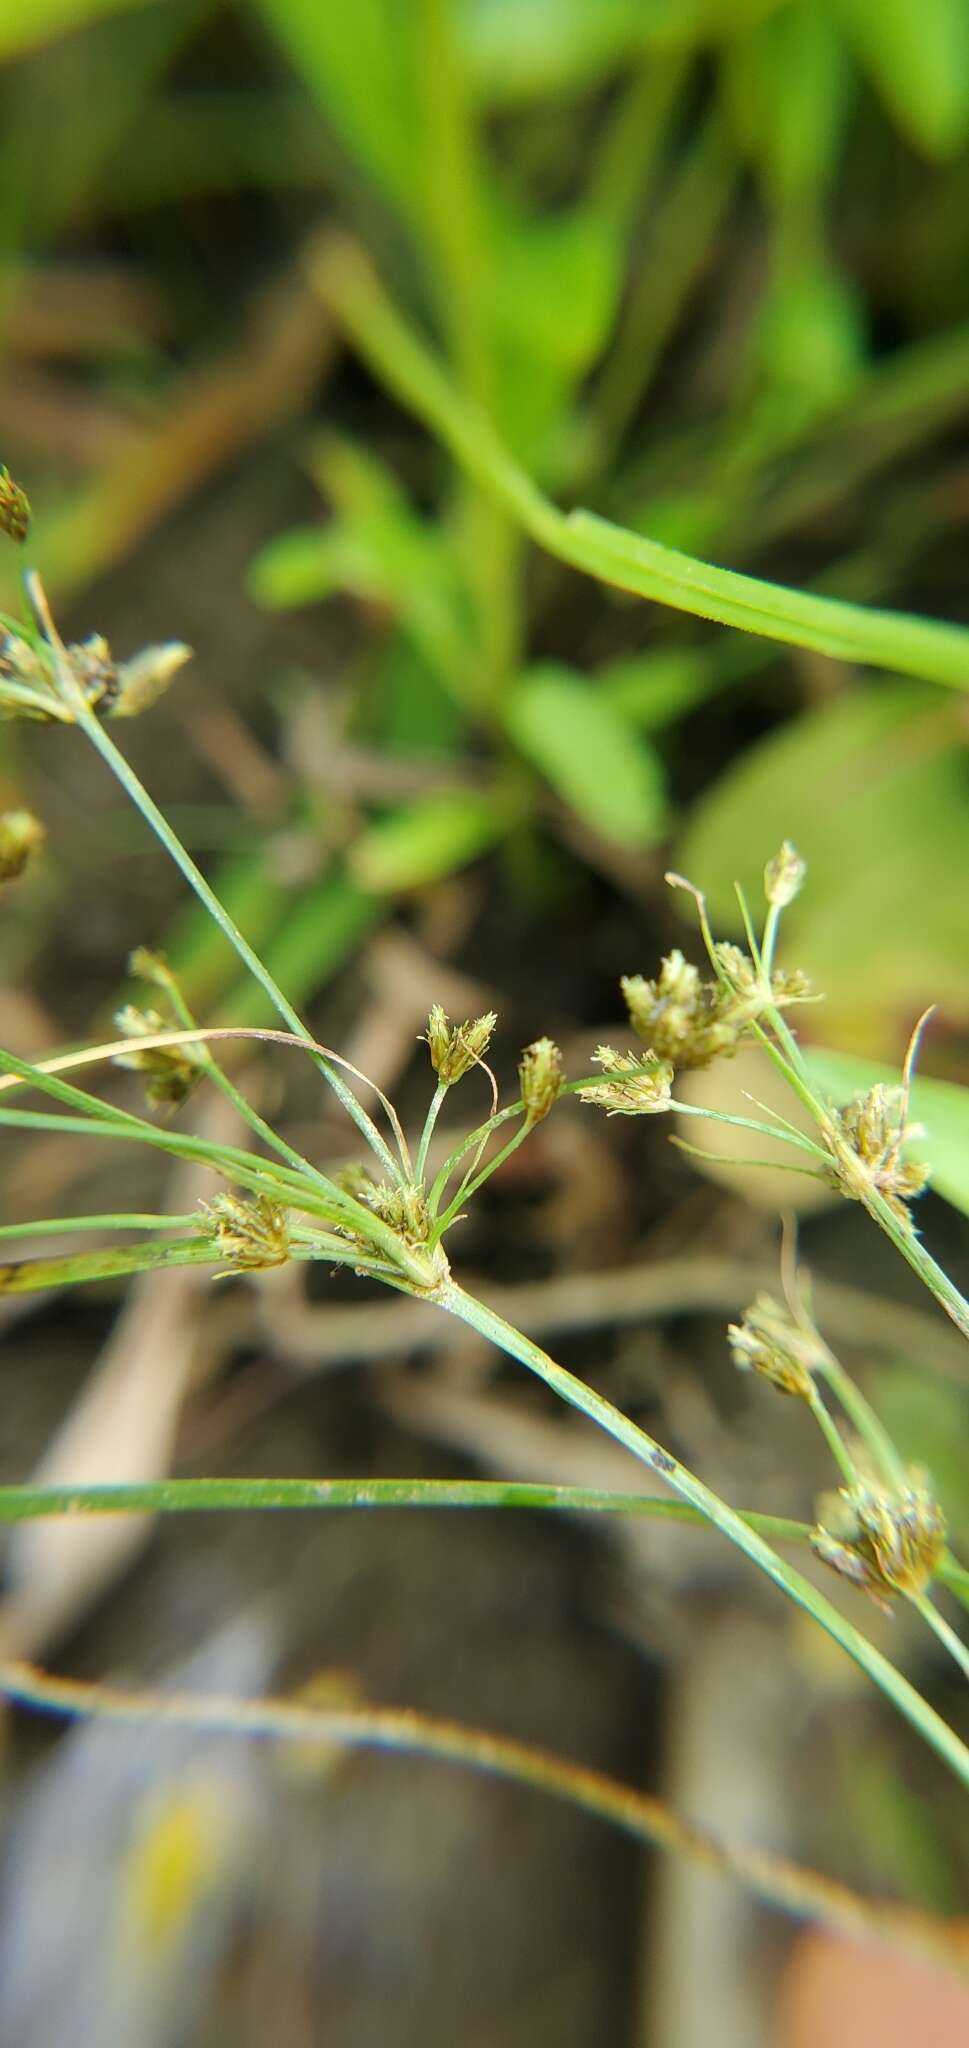 Image of grass-like fimbry